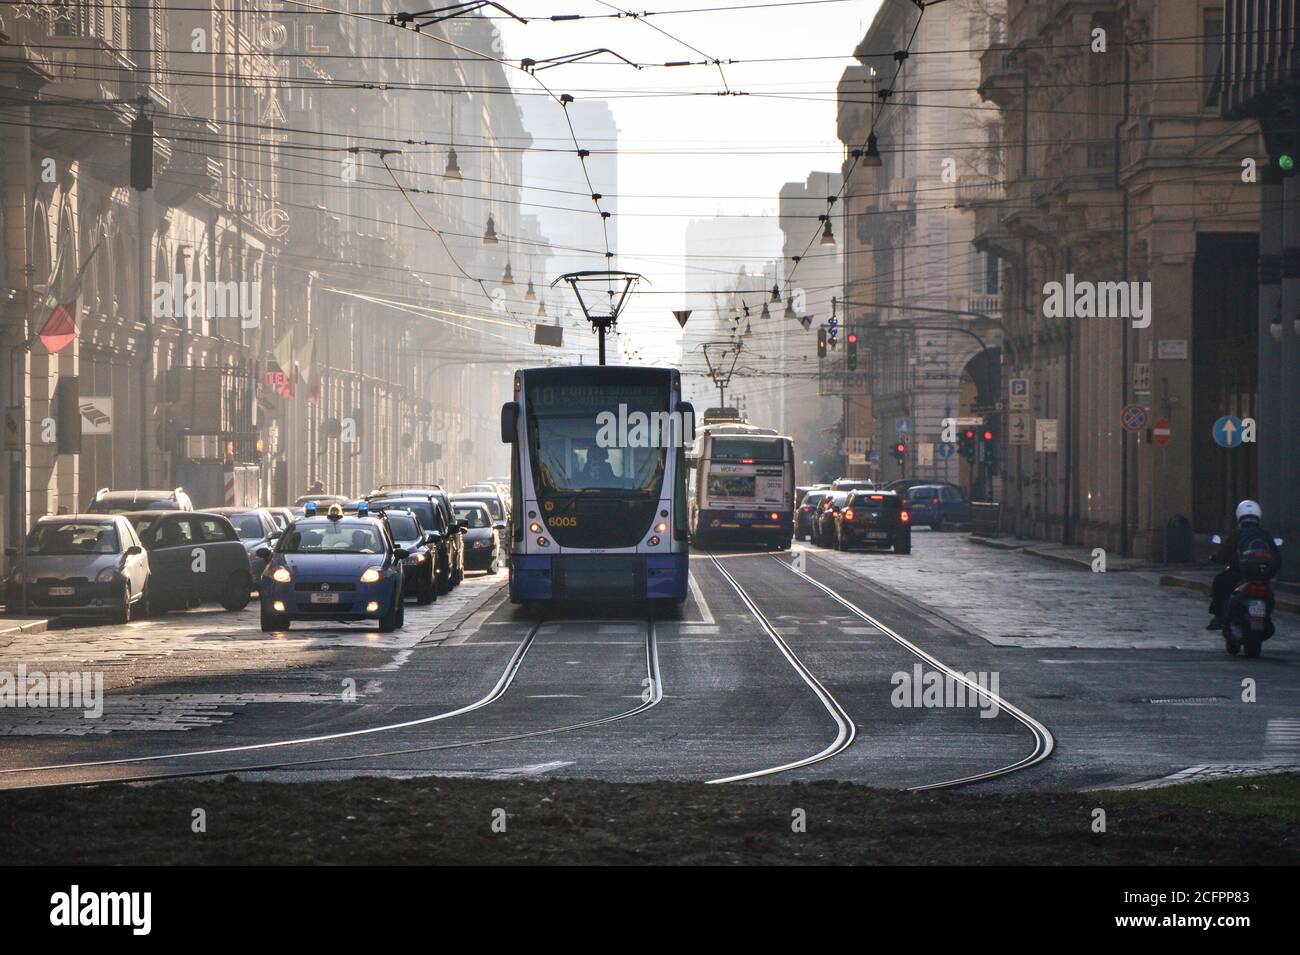 Le tramway coloré de Turin, Italie Banque D'Images